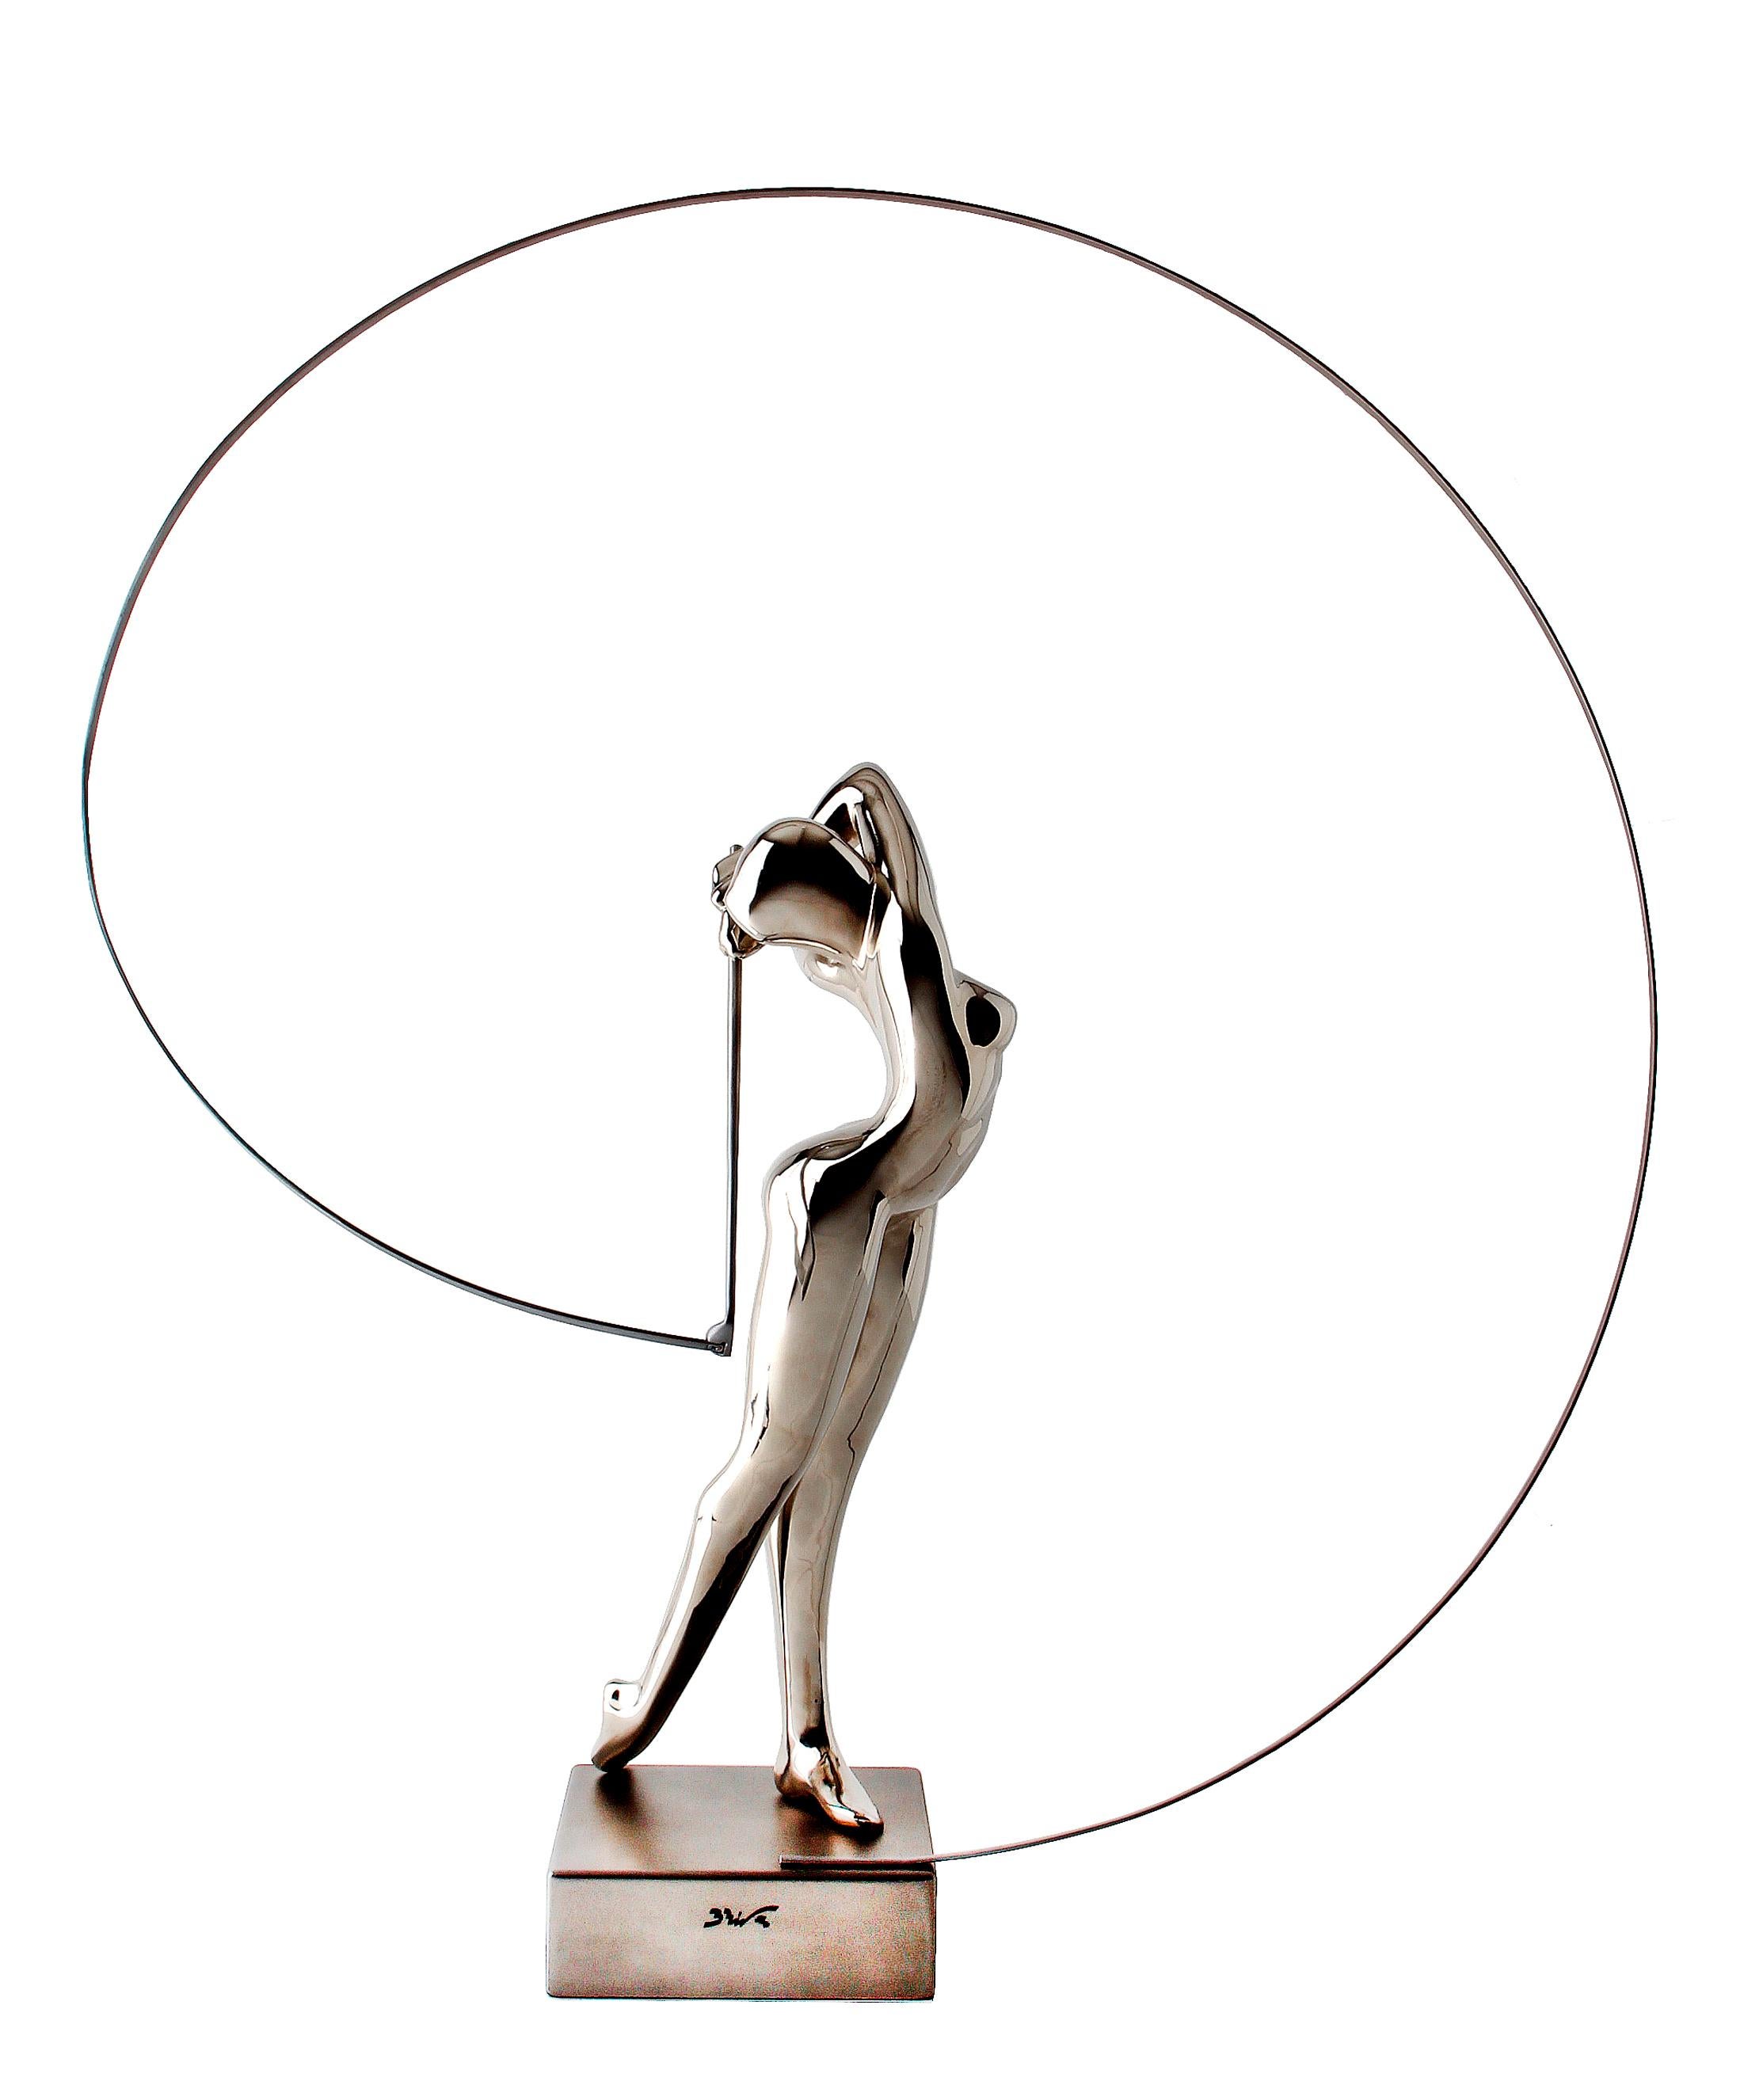  Bernard Rives  Golf  Silver  Swing original resin sculpture For Sale 1